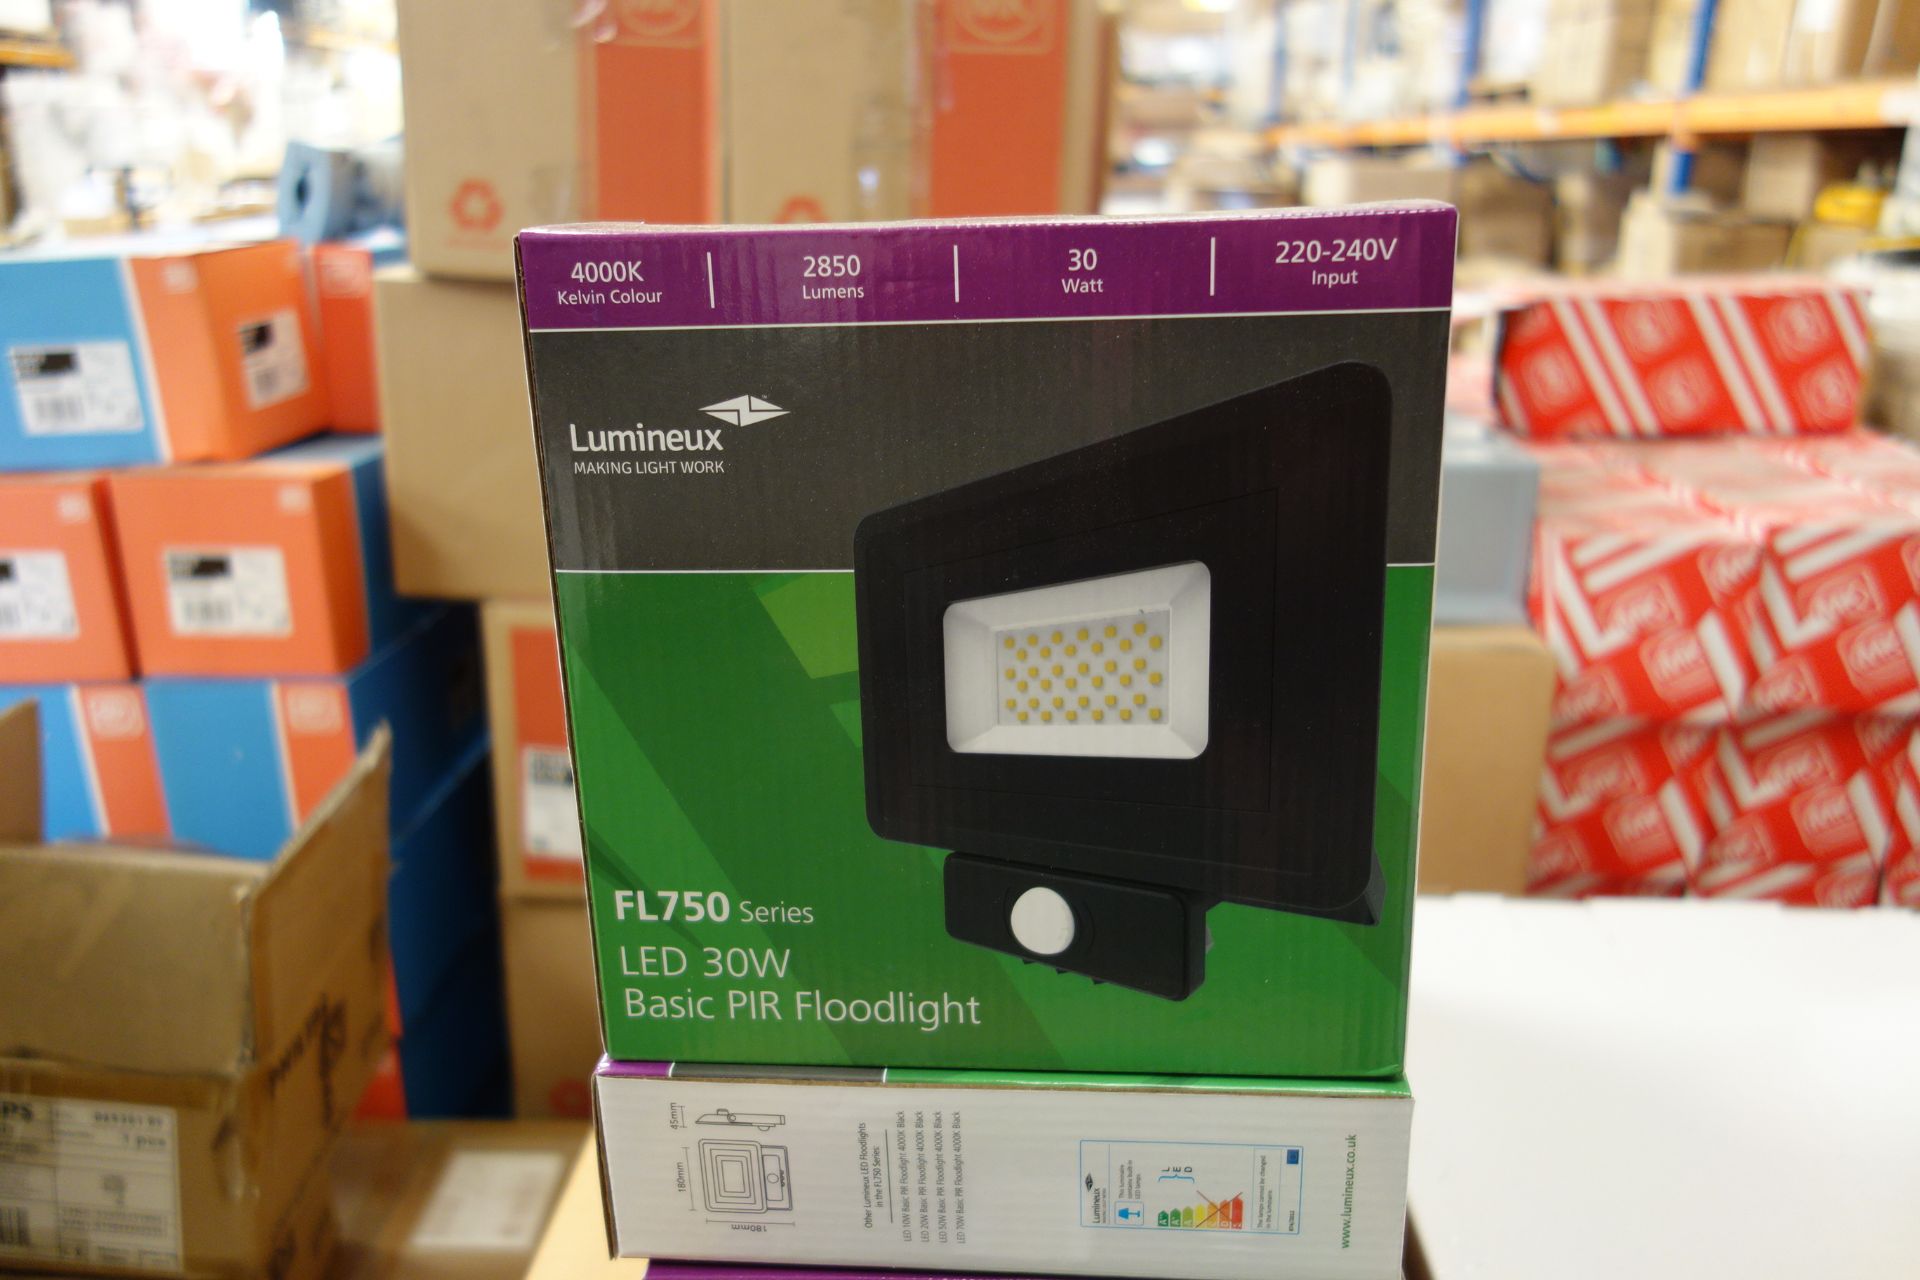 10 x LUMINEUX 401335-BL 30w LED Basic PIR Floodlights FL750 Series 4000K 2850 Lumens